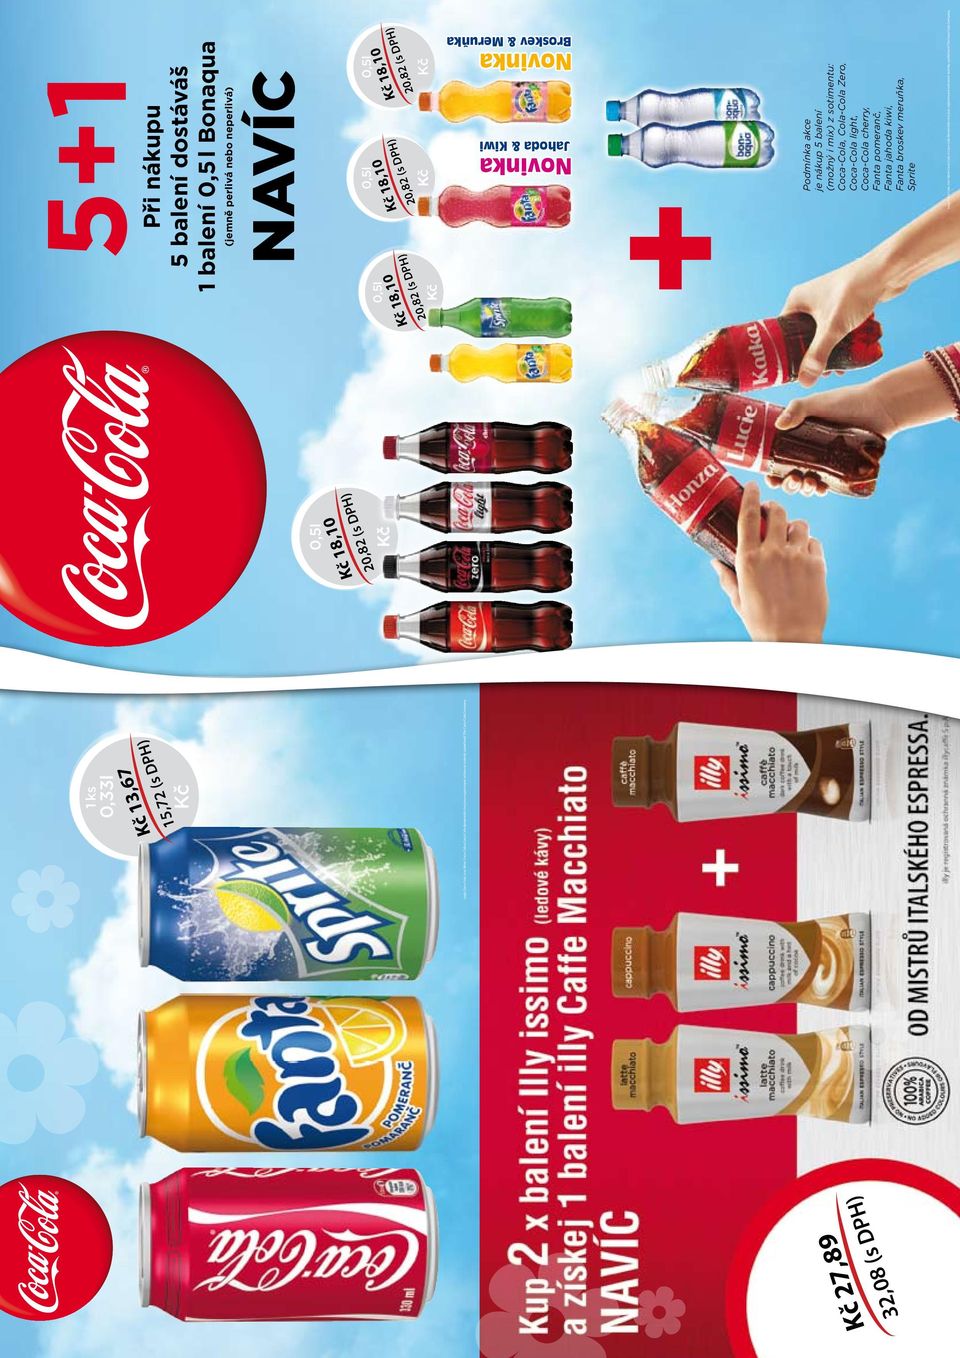 jahoda kiwi, Fanta broskev meruňka, Sprite Logo Coca-Cola, tvar láhve Coca-Cola a Coca-Cola dynamická vlna jsou registrované ochranné známky společnosti The Coca-Cola Company.